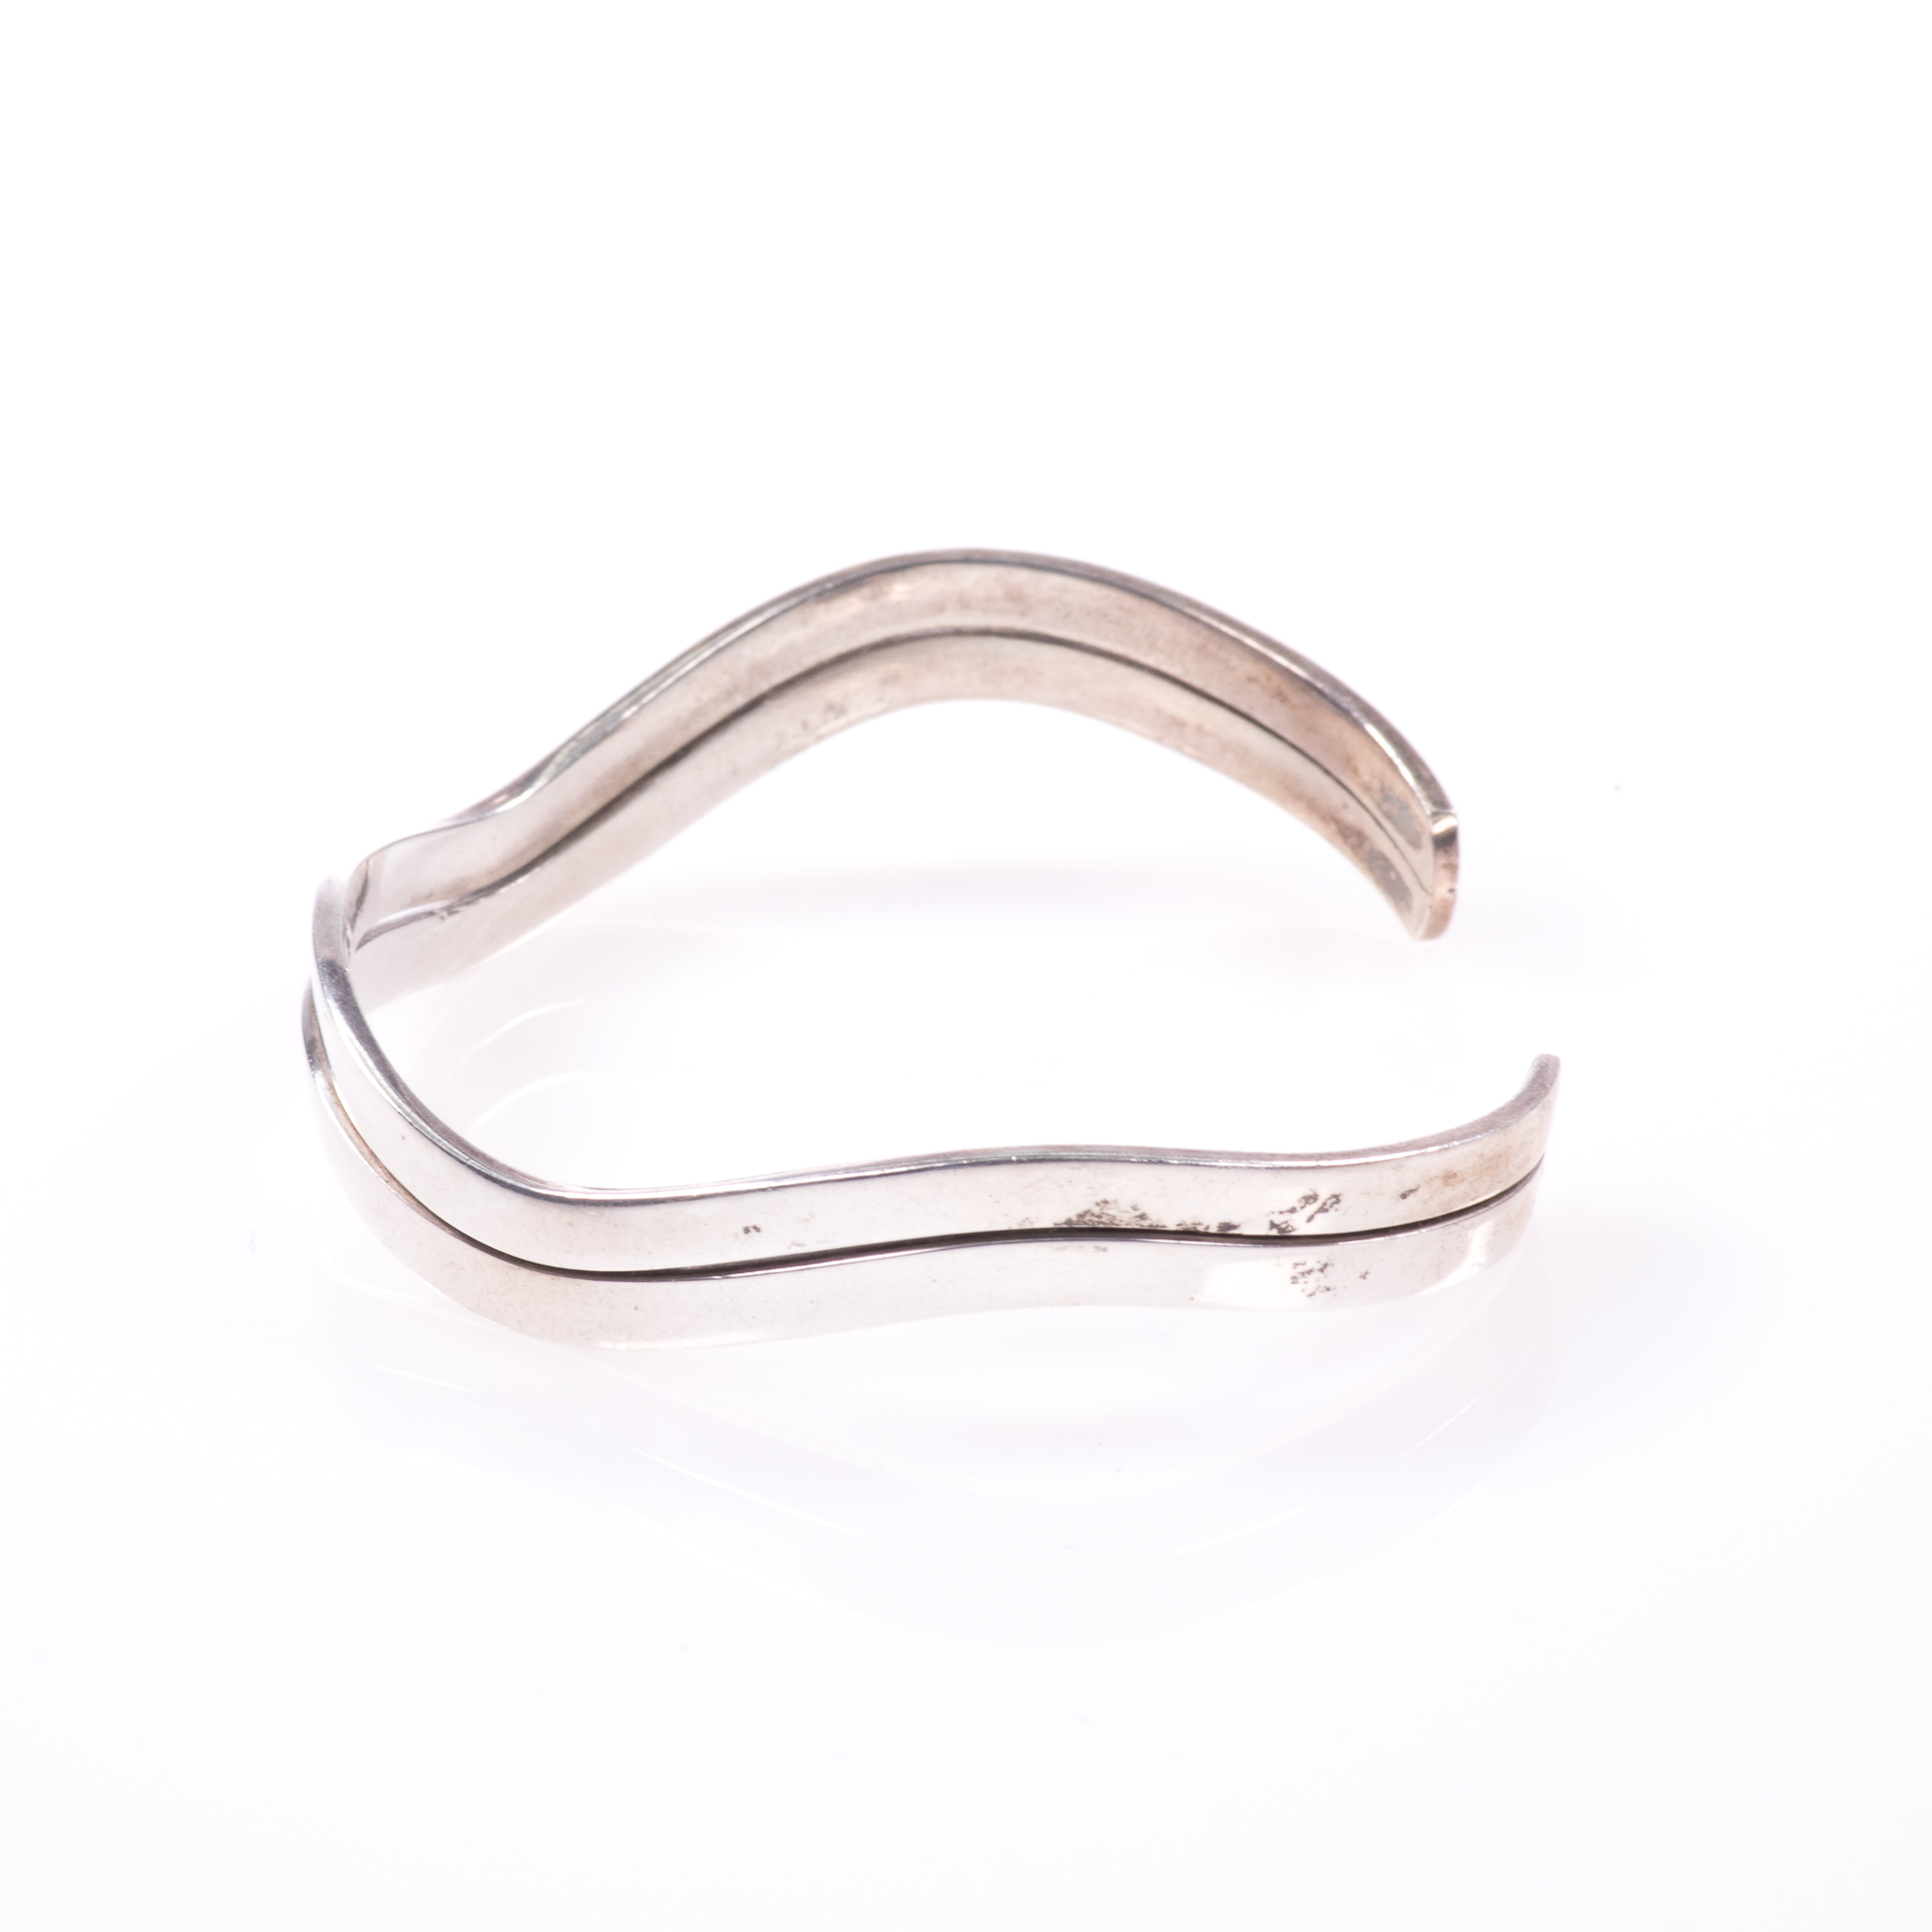 Silver Modernist Bangle Bracelet - Image 2 of 7